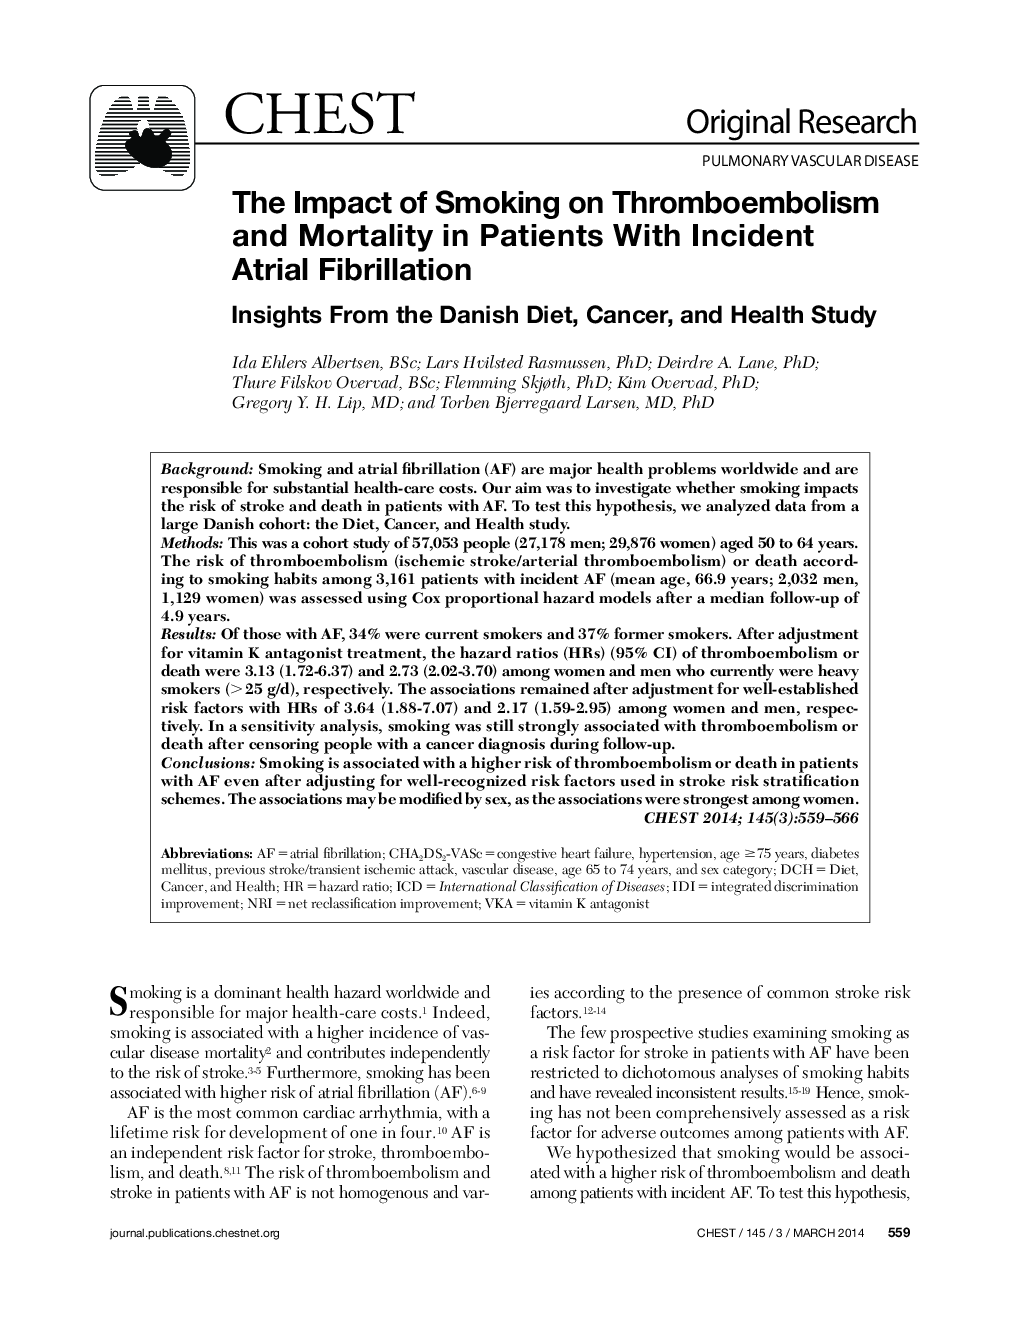 تأثیر سیگار کشیدن بر ترومبوآمبولی و مرگ و میر در بیماران مبتلا به فیبریلاسیون دهلیزی حاد 